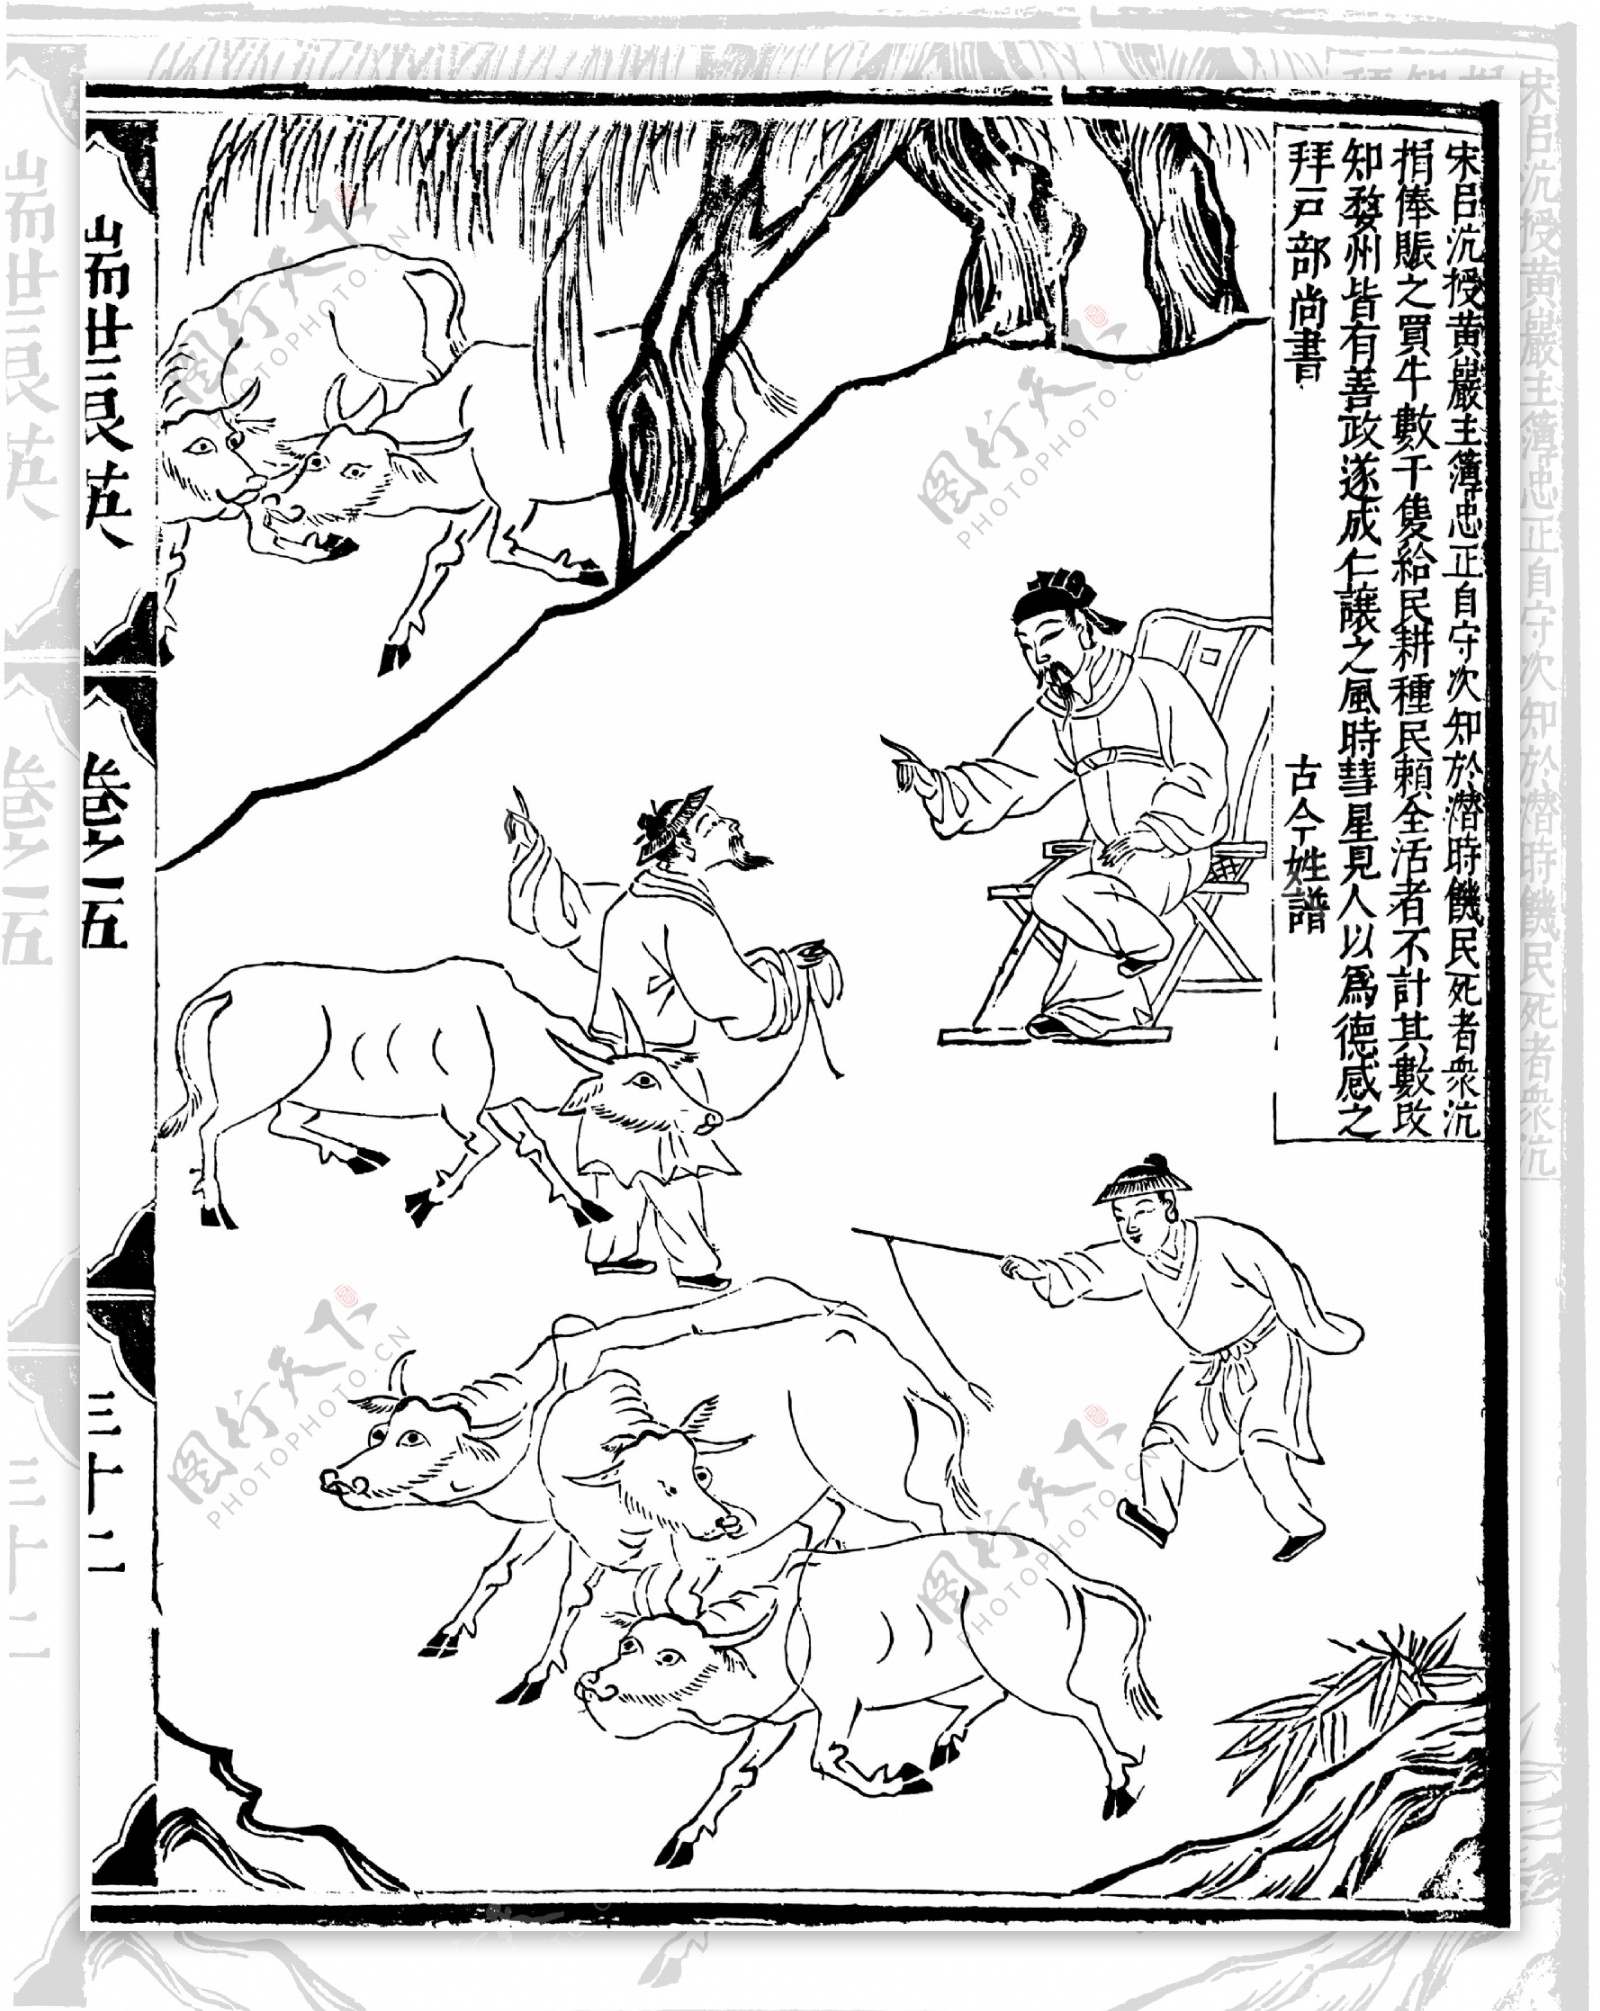 瑞世良英木刻版画中国传统文化75